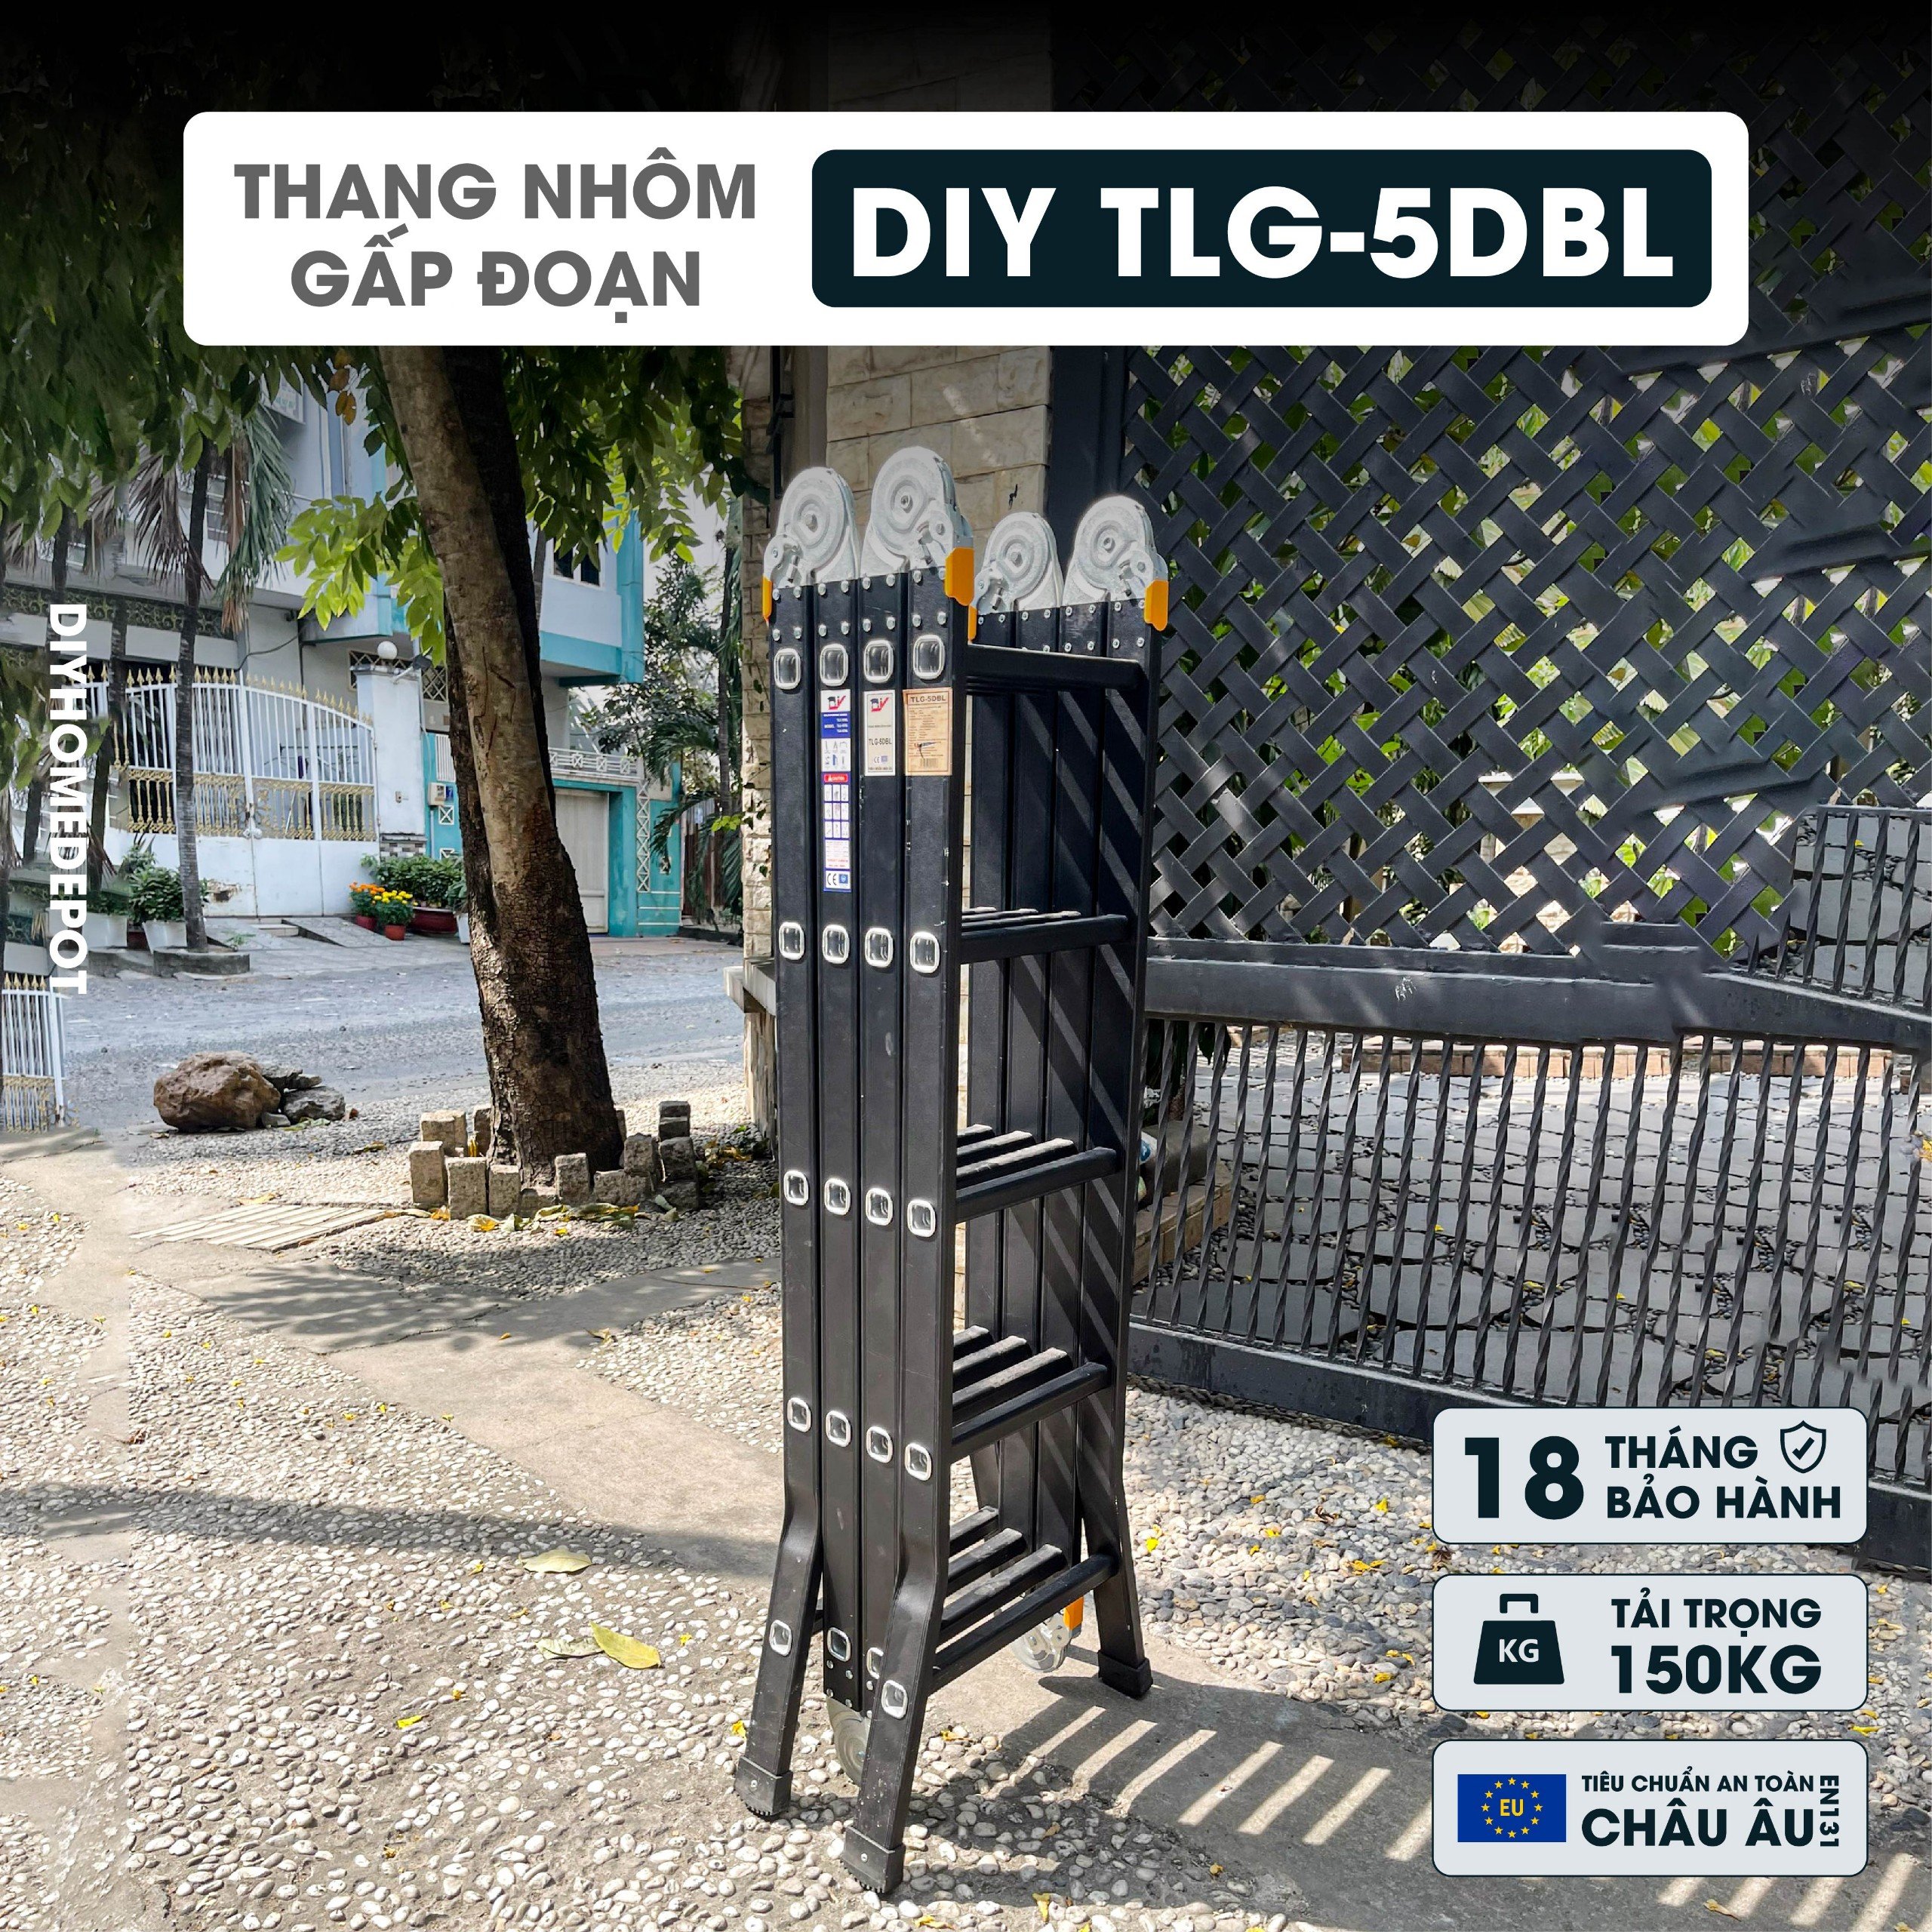 Thang nhôm gấp đoạn cao cấp chân choãi DIY TLG-5DBL chiều cao sử dụng chữ A 2.75M chữ I 5.6M